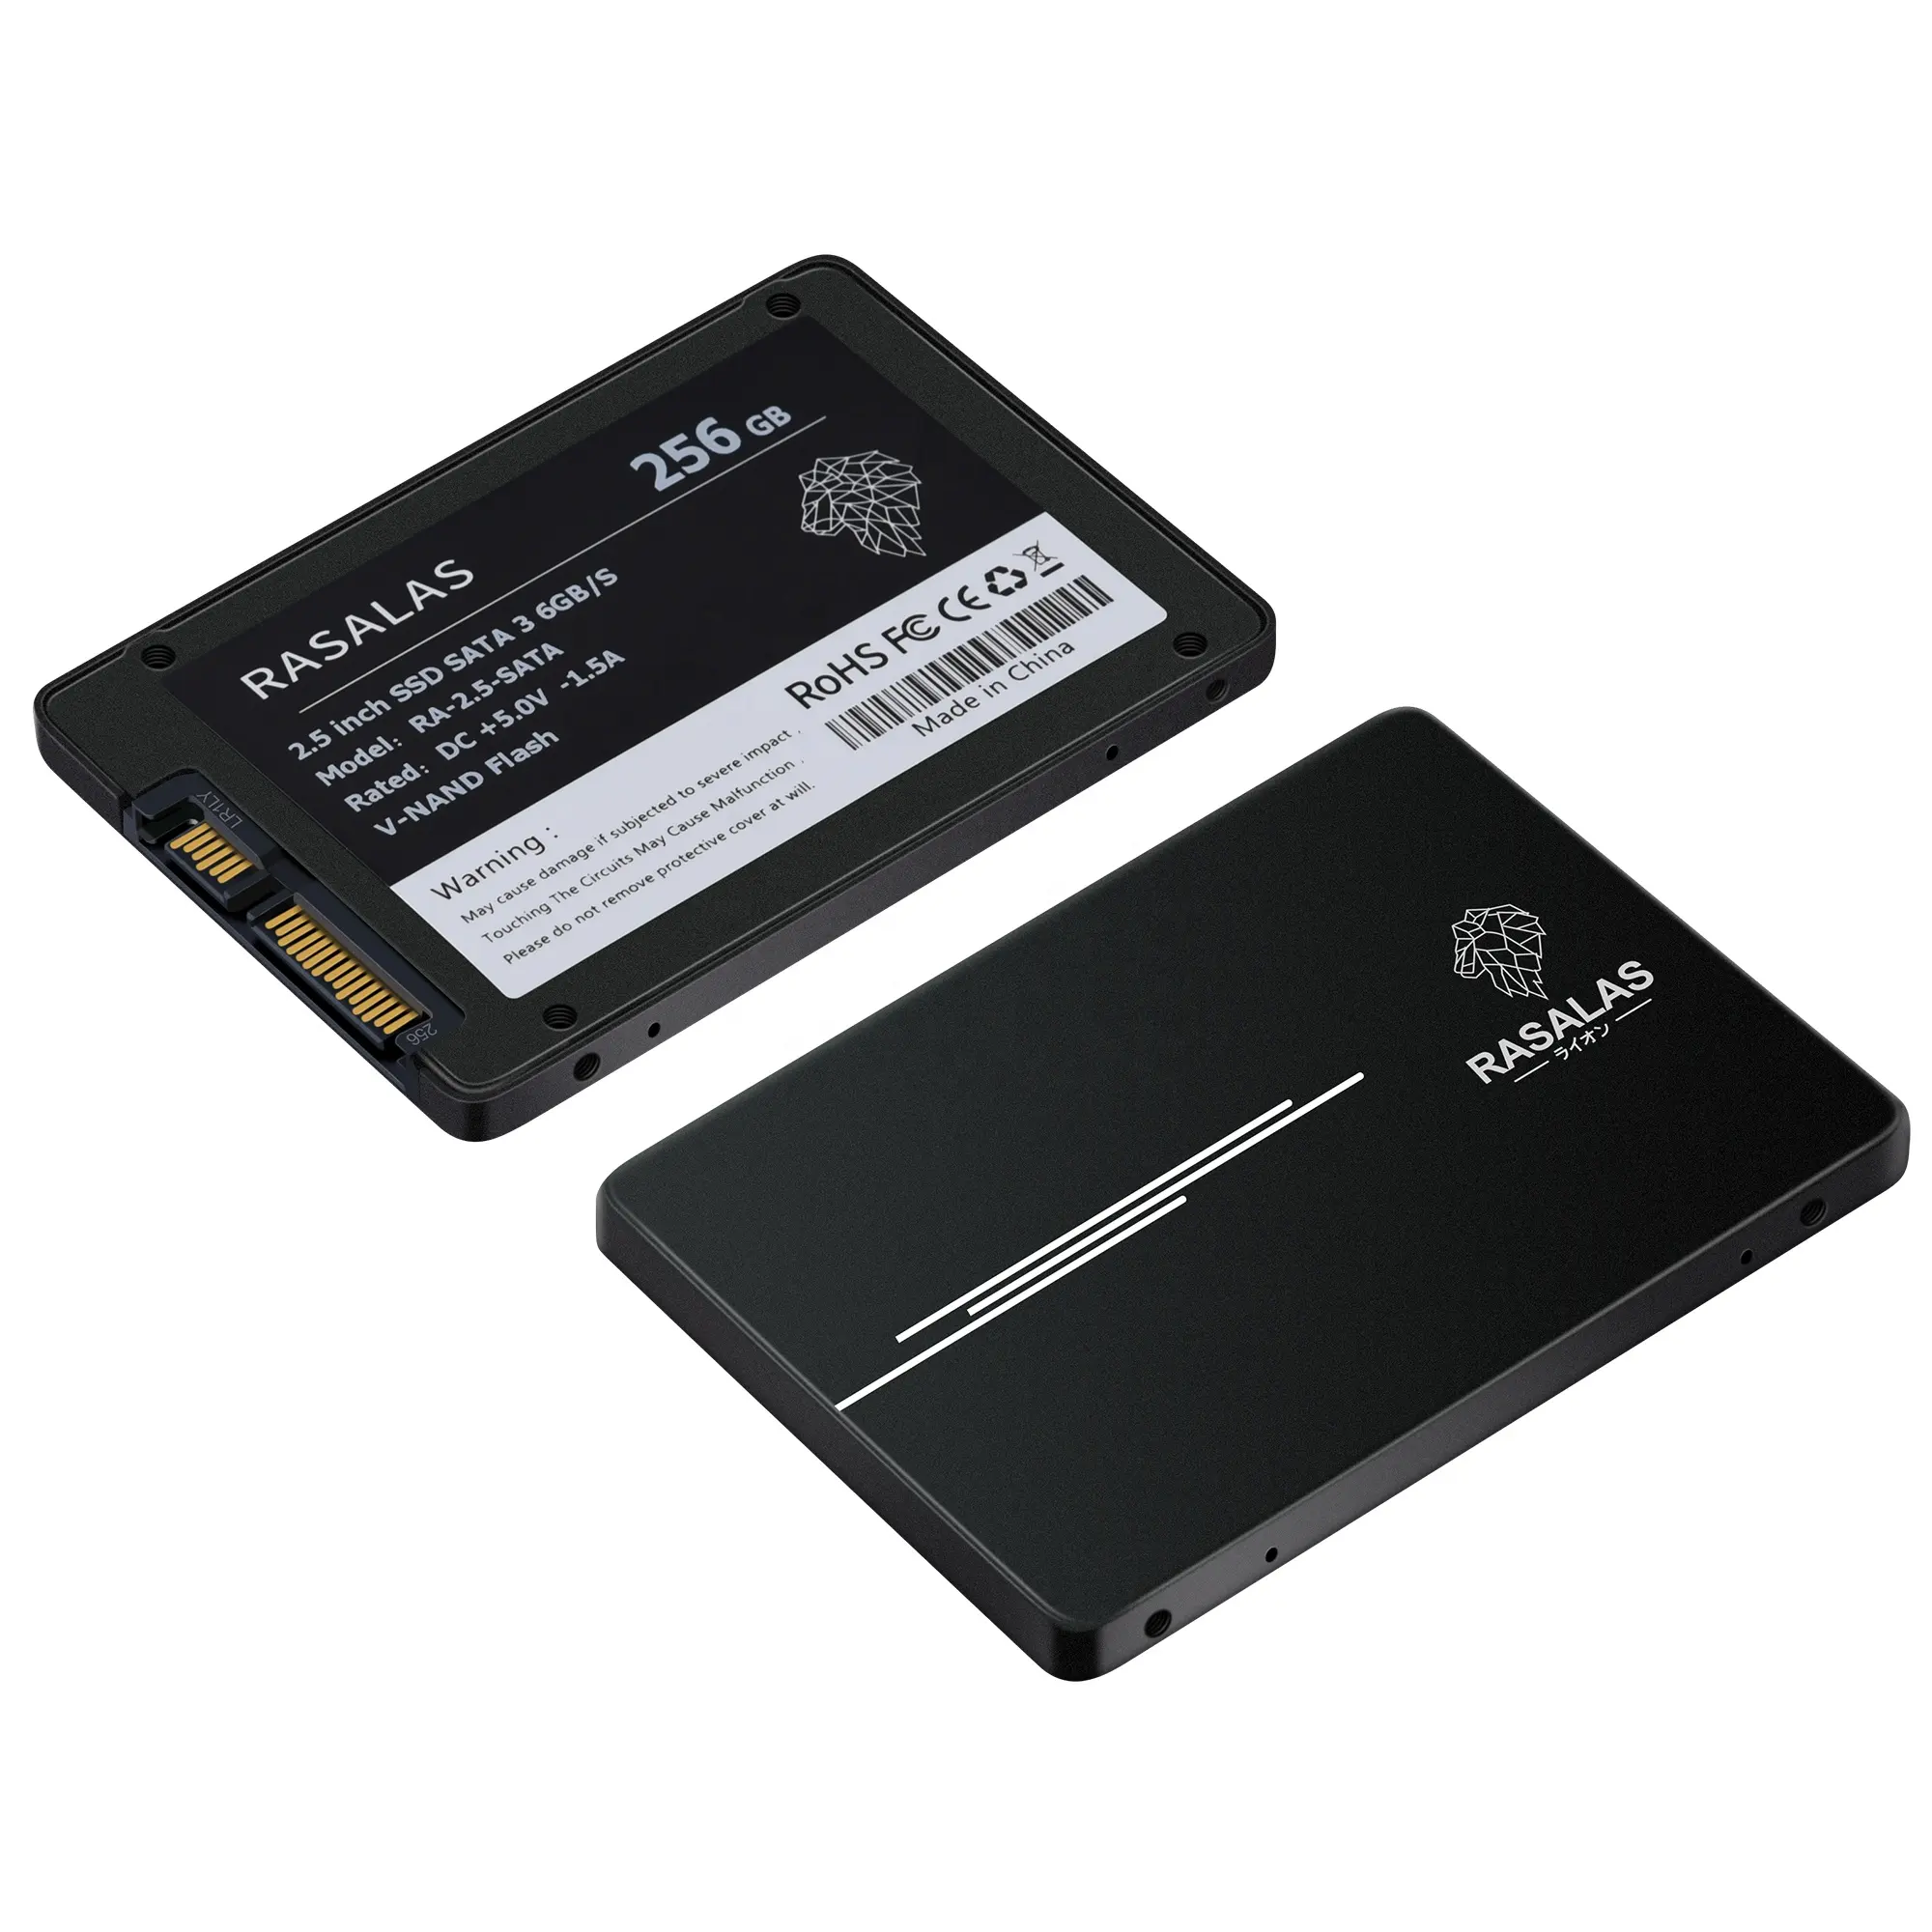 Solid State Drive Interface Sata 3.0 Hard Disk 2.5 Inch 120GB/128GB/240GB/256GB/480GB/512GB/1TB SSD